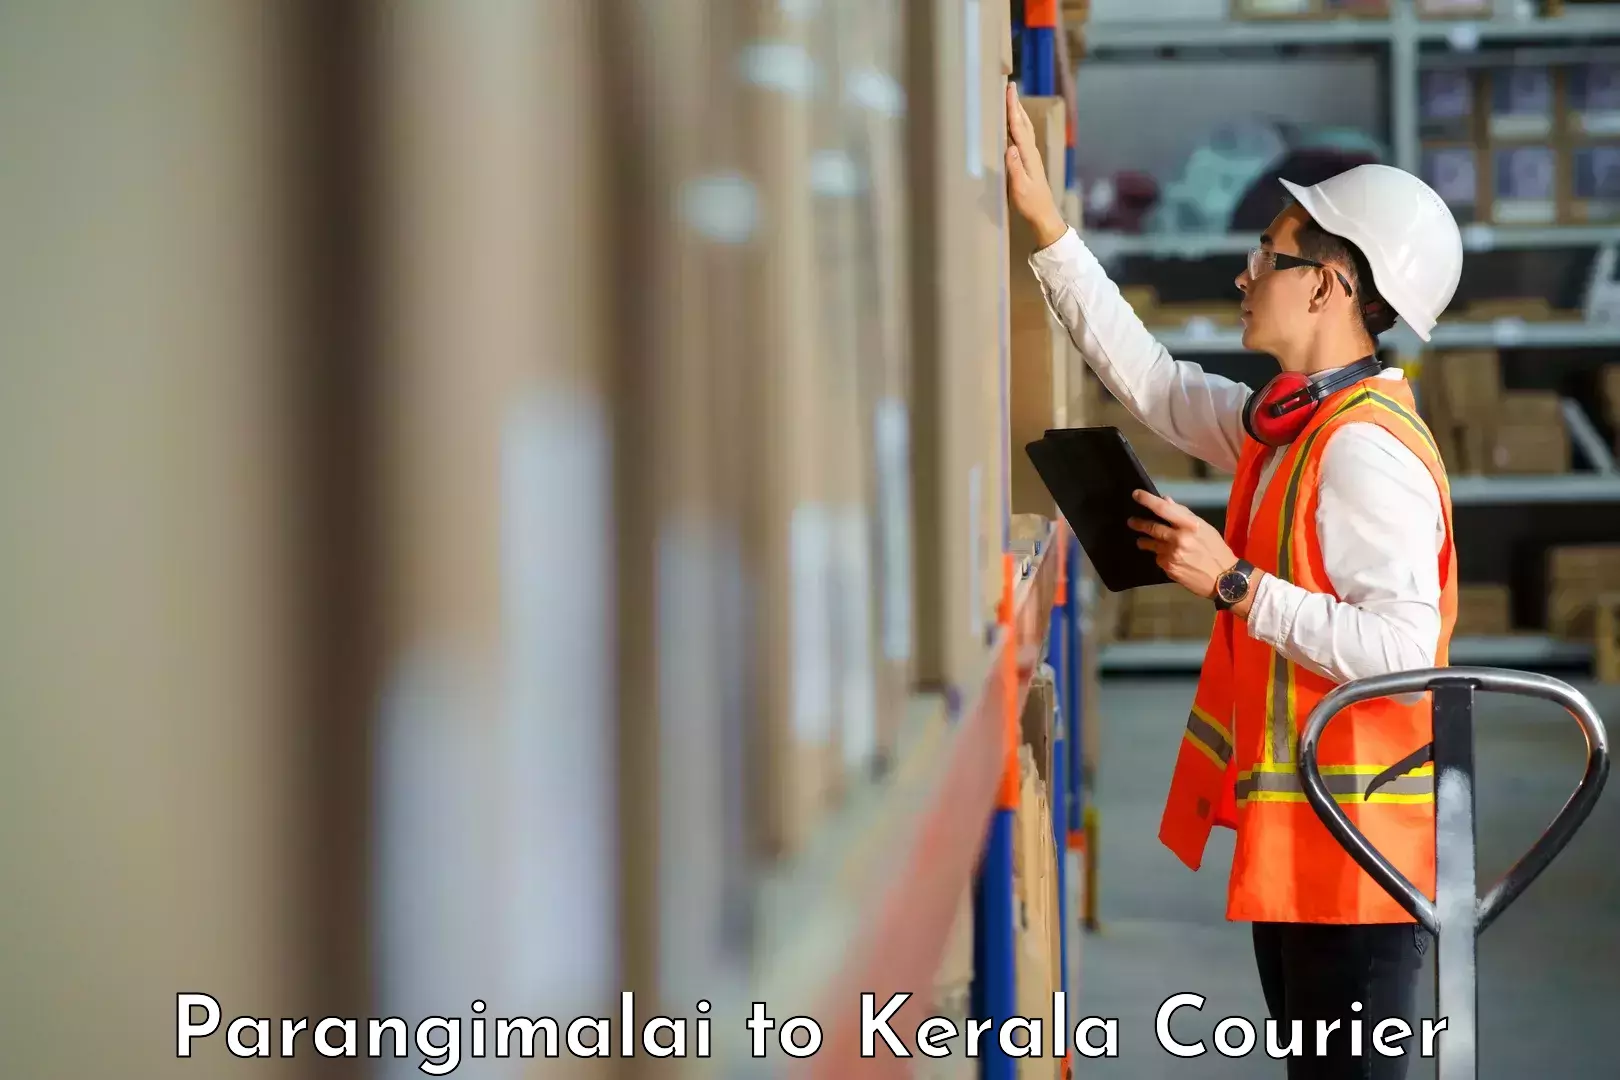 High-performance logistics Parangimalai to Kerala